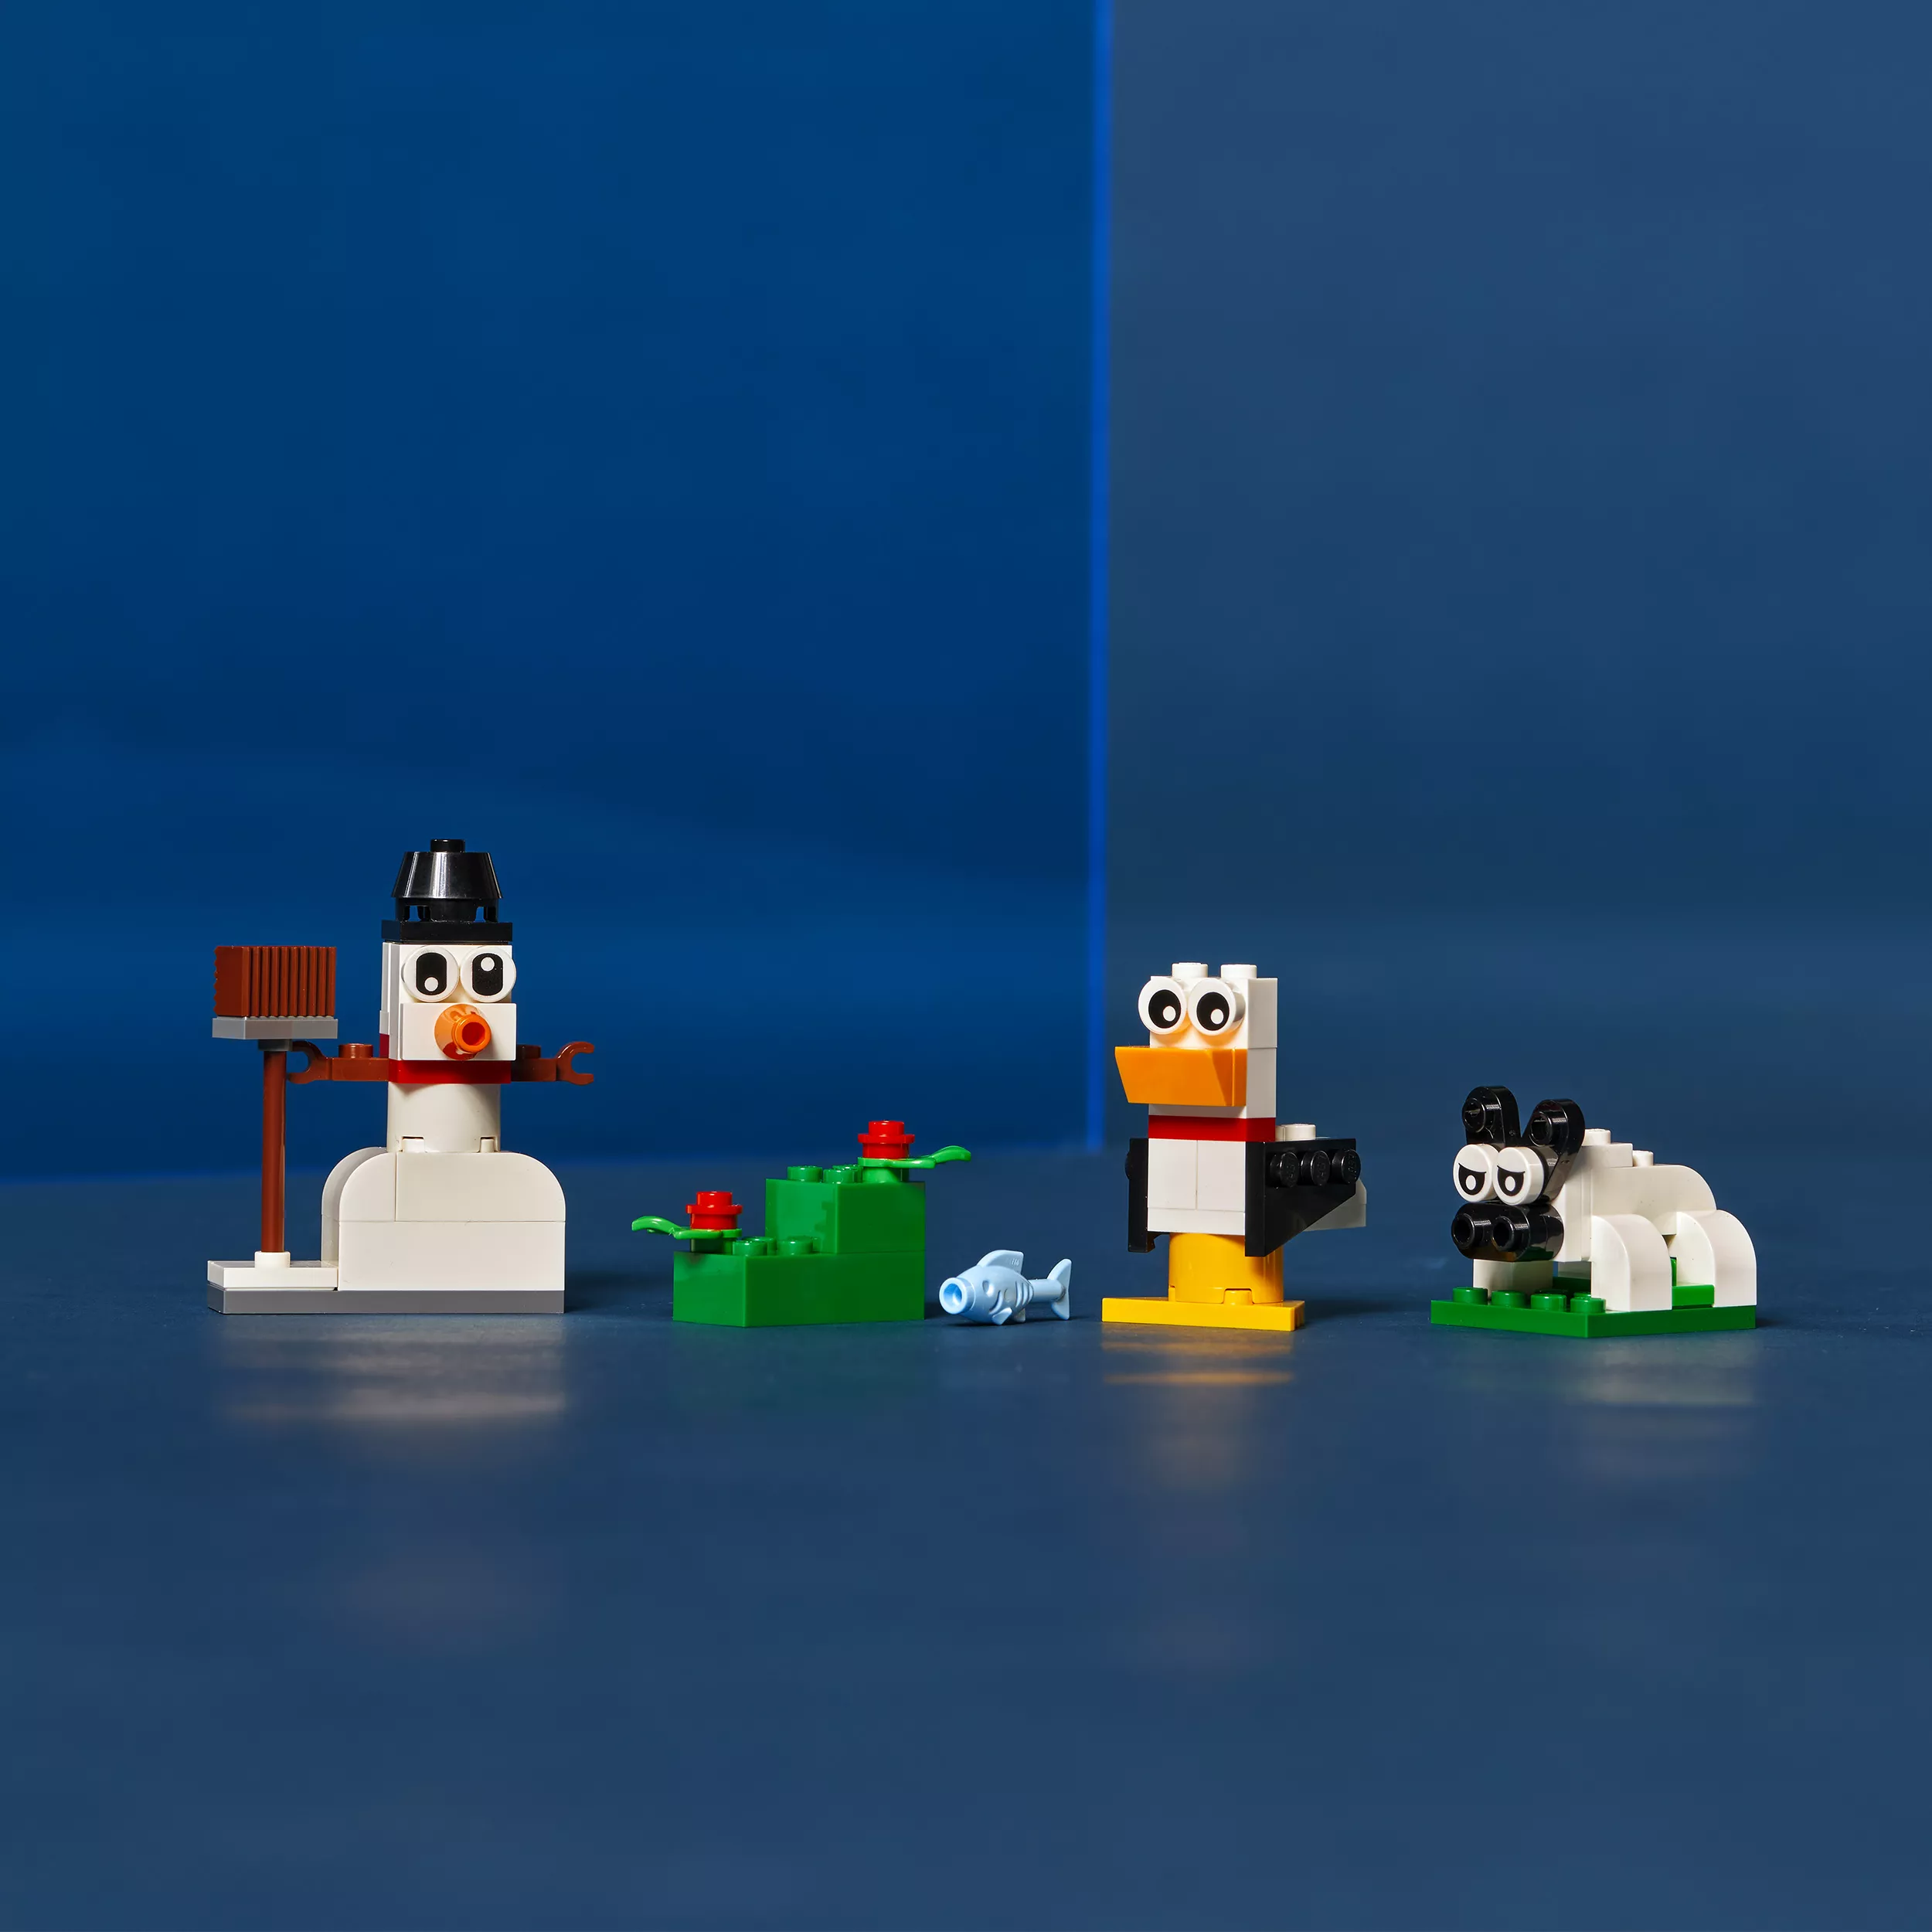 LEGO 11012 Classic Kreativ-Bauset mit weißen Steinen